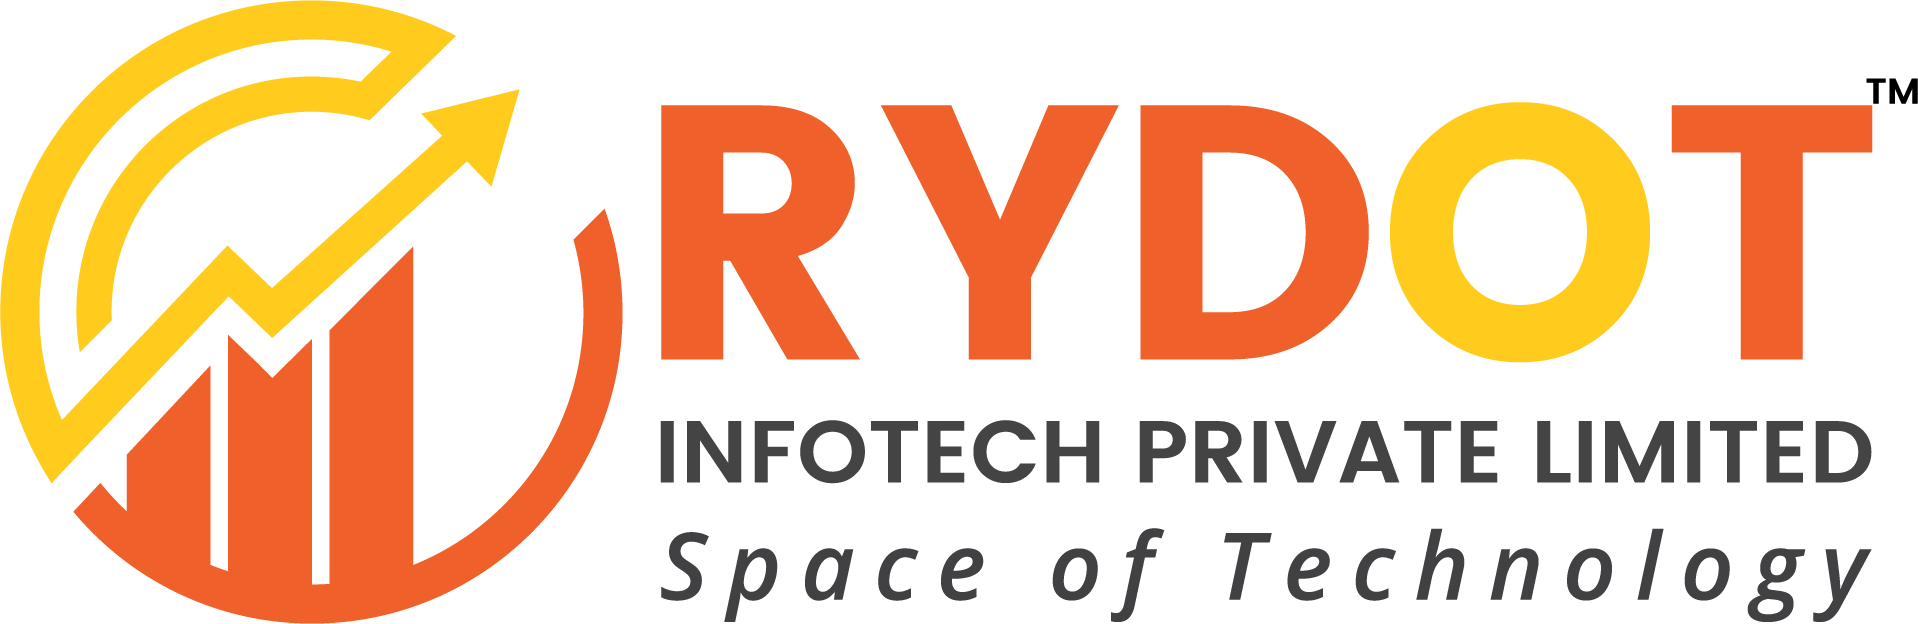 Rydot Infotech Private Limited